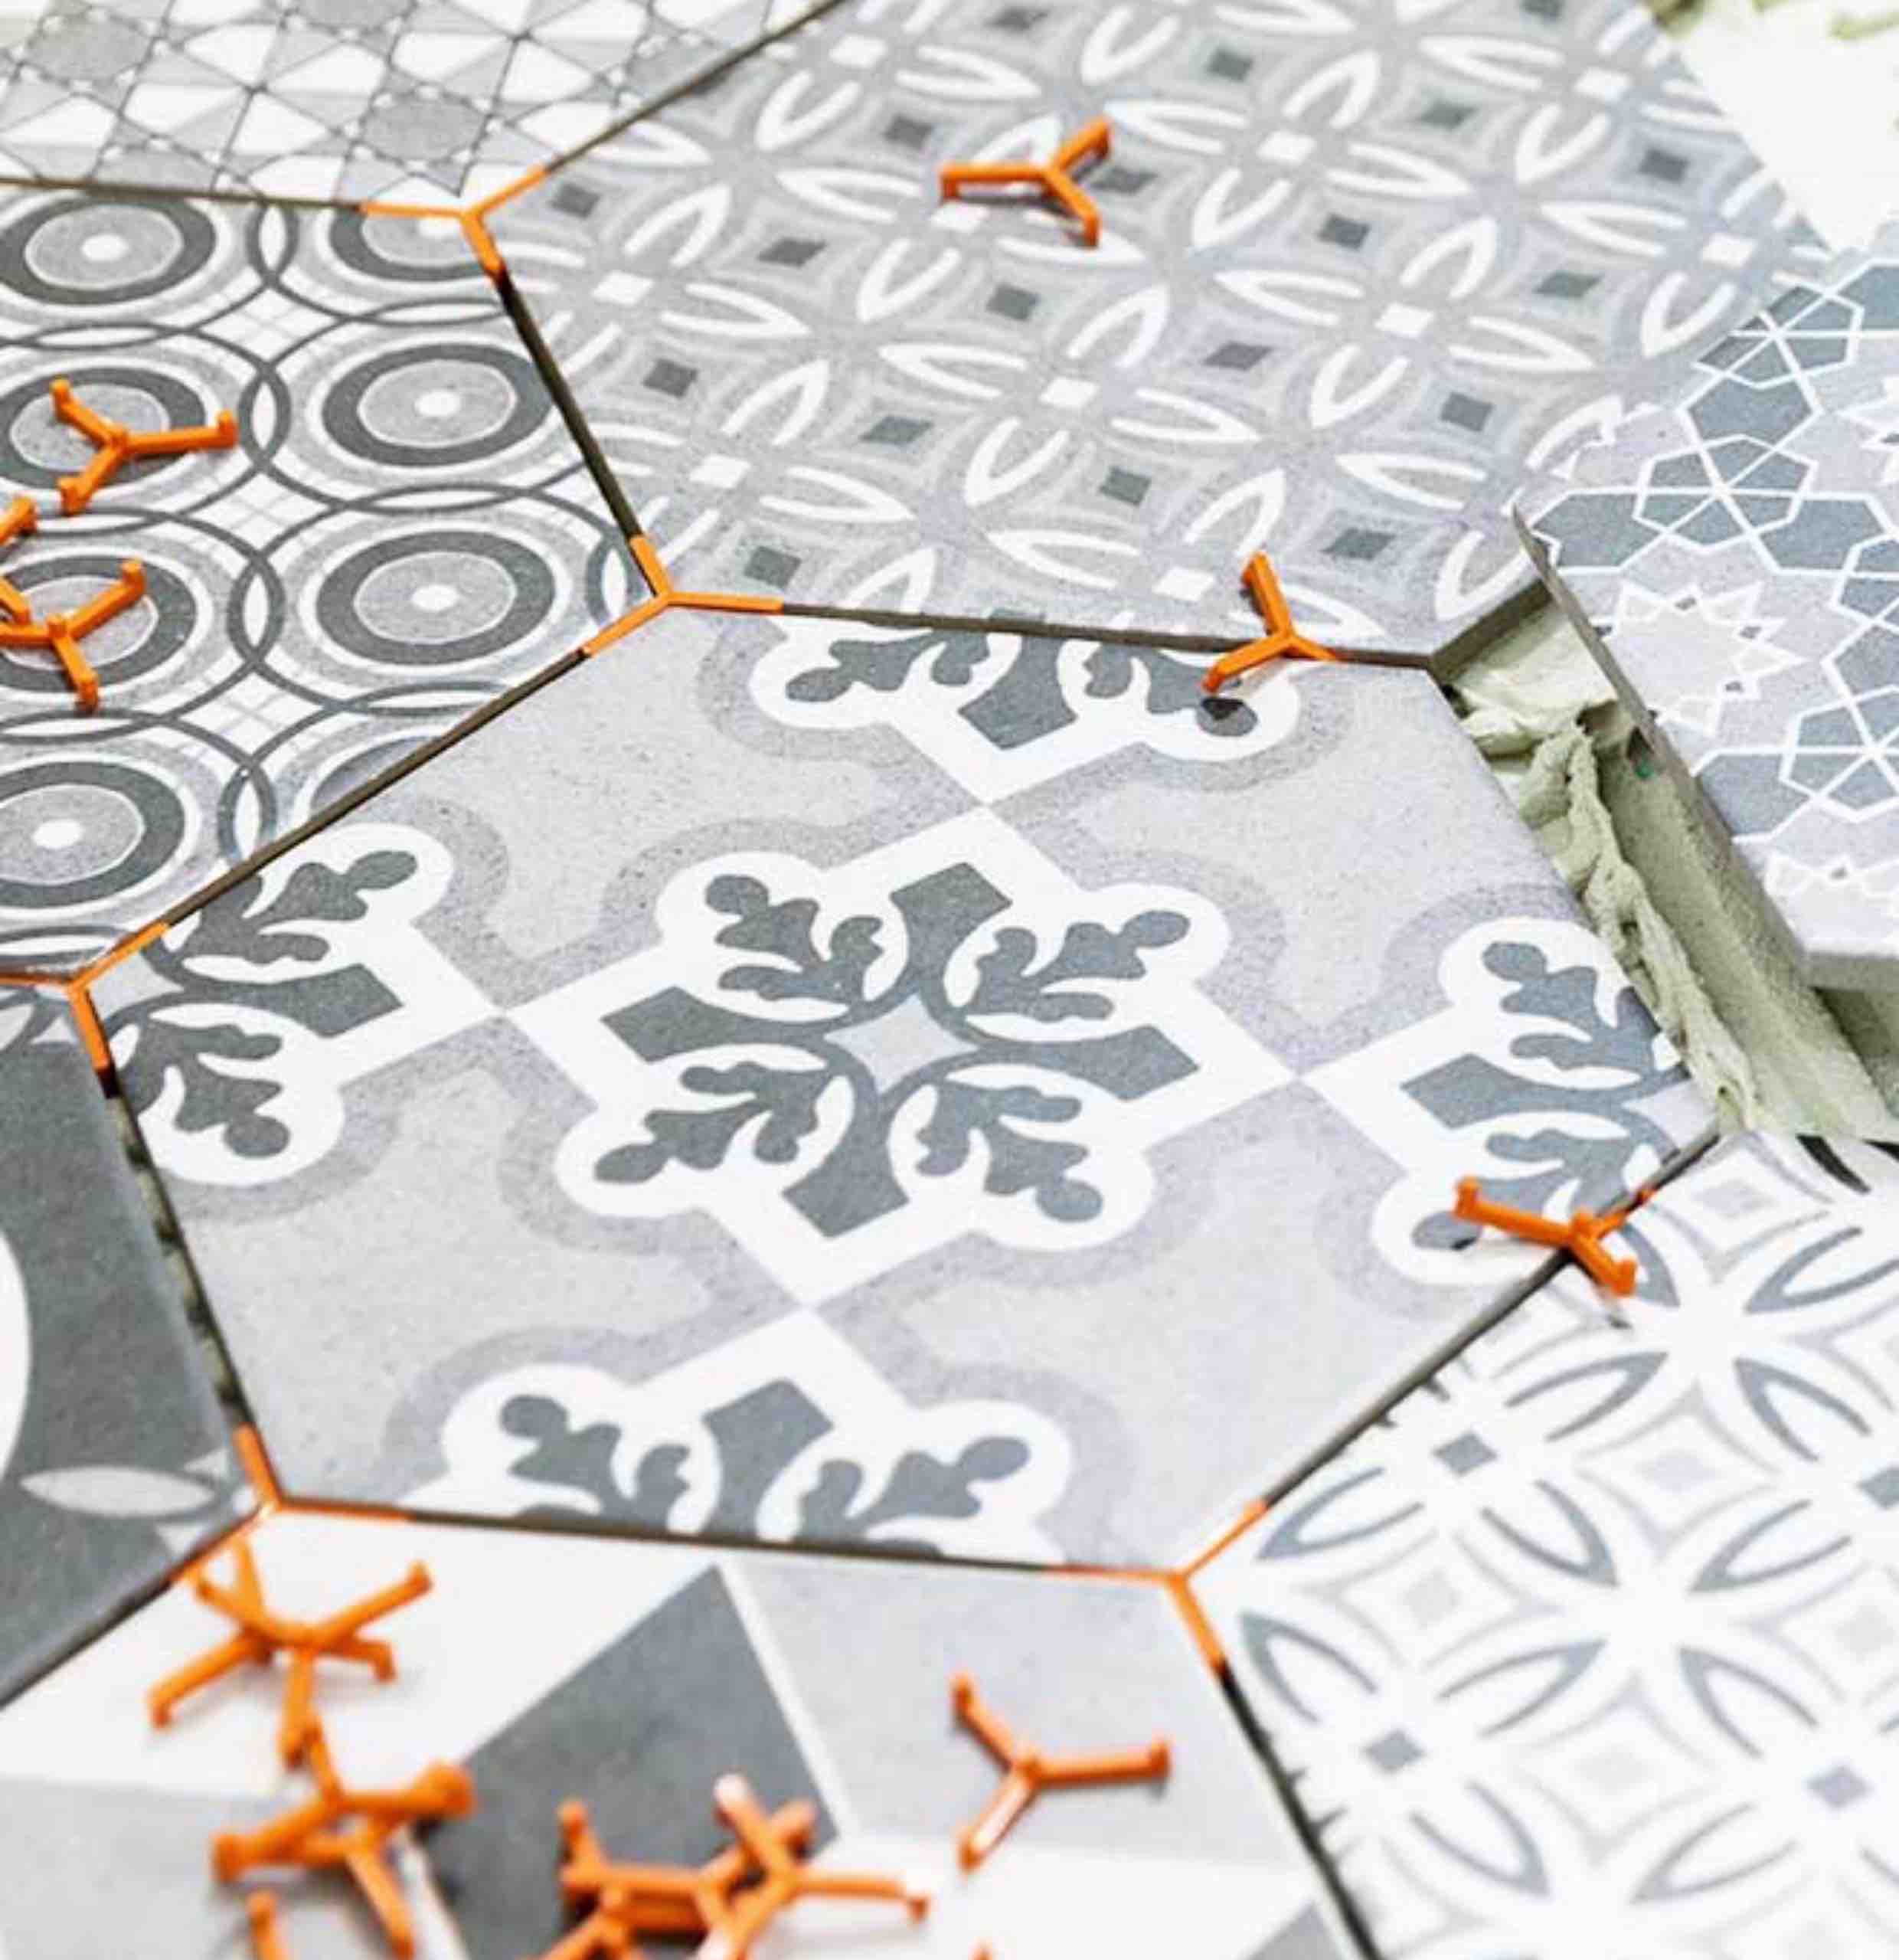 Trendy hexagonal tiles installed by Footprints Floors in Denver.